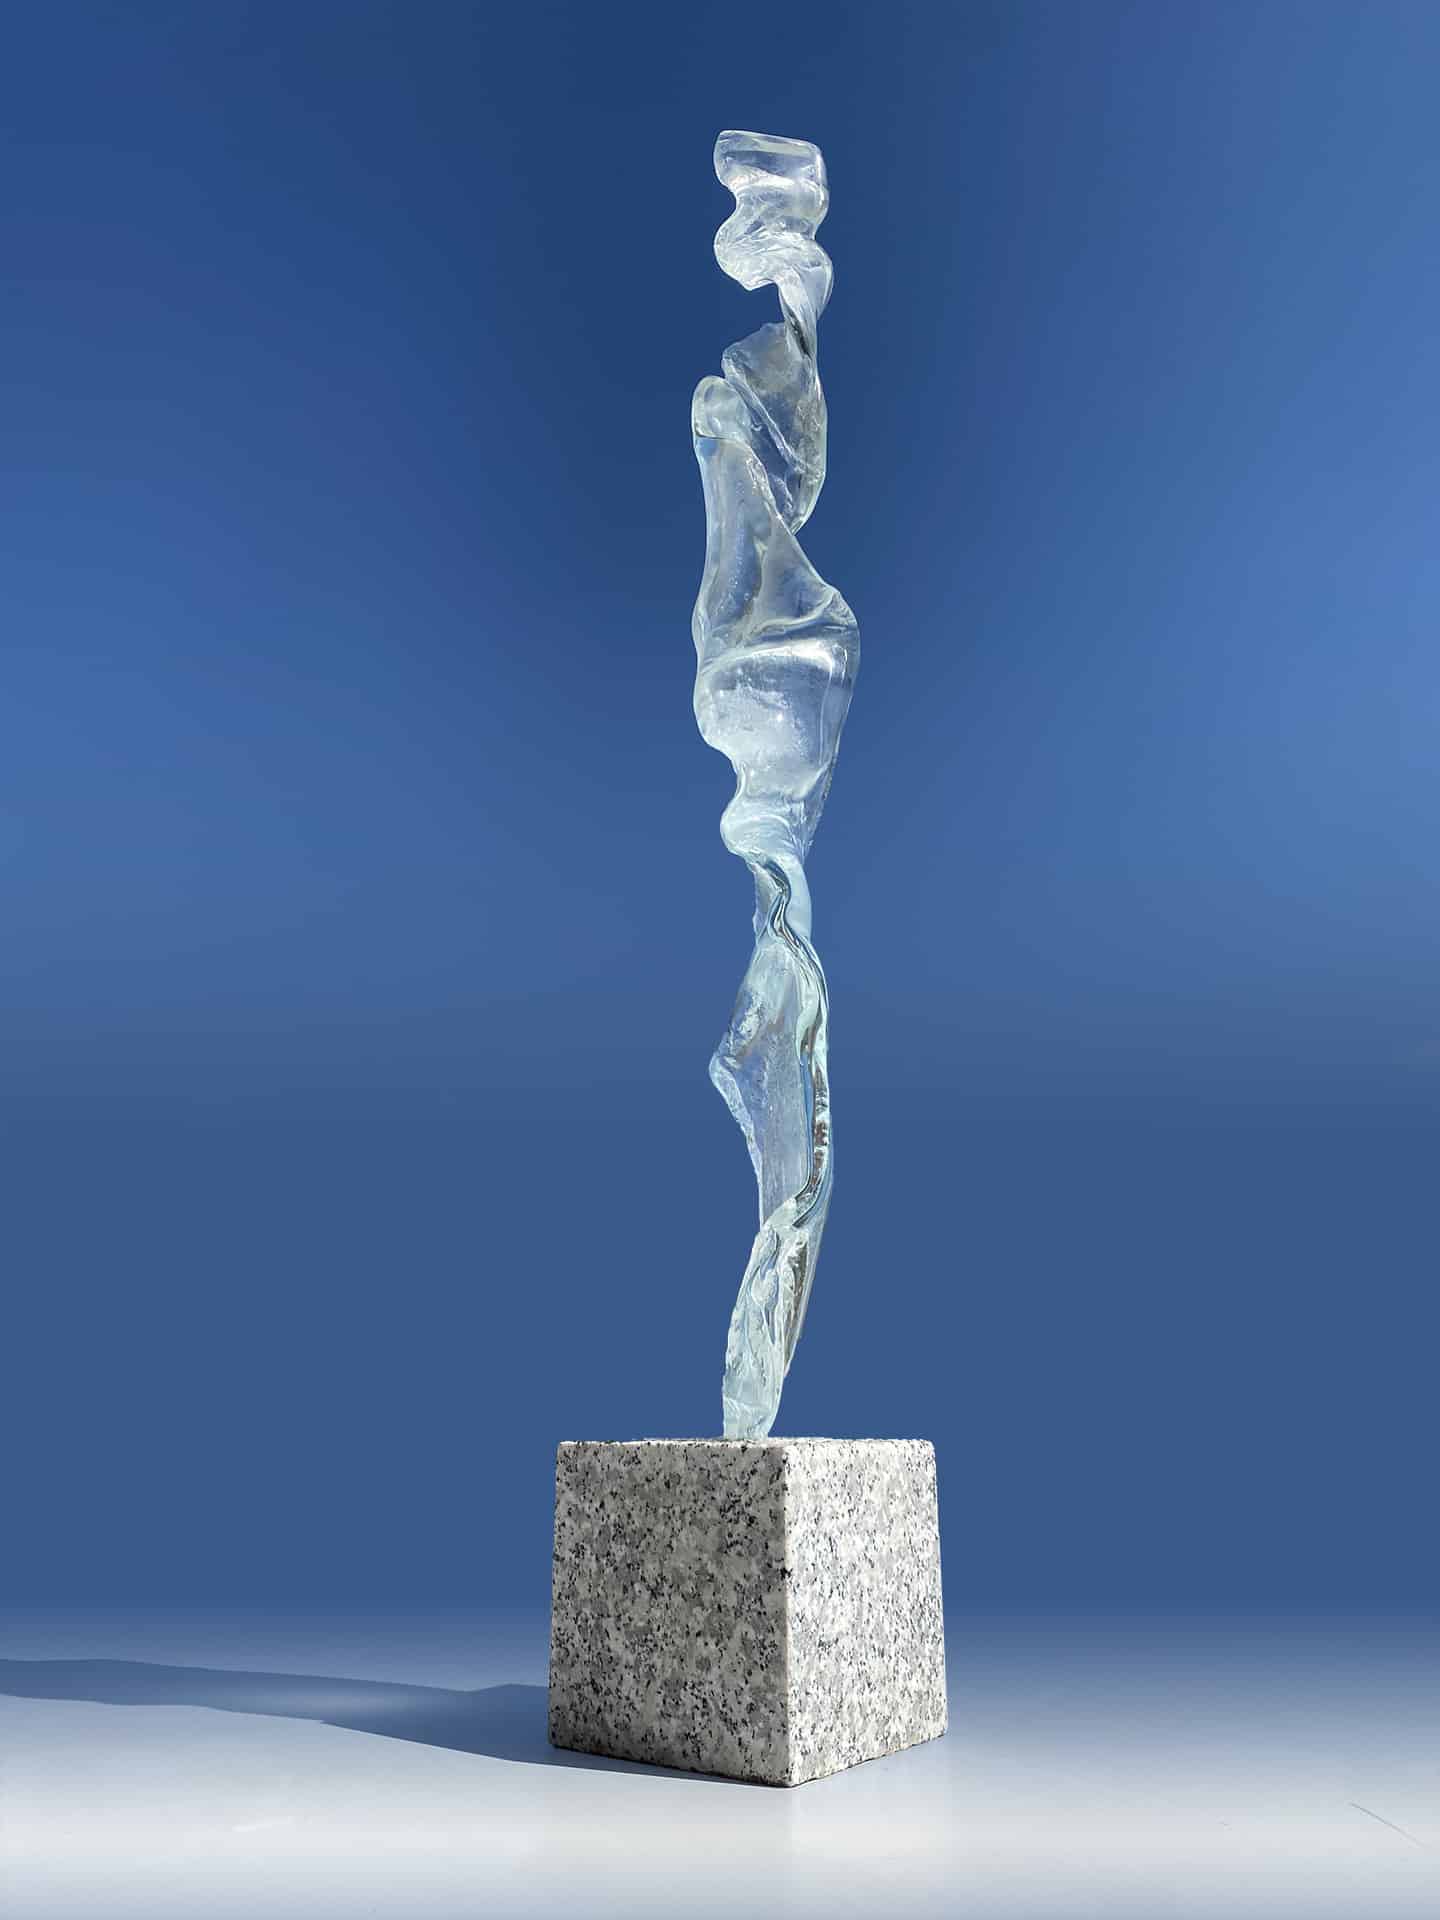 Glass sculpture queen